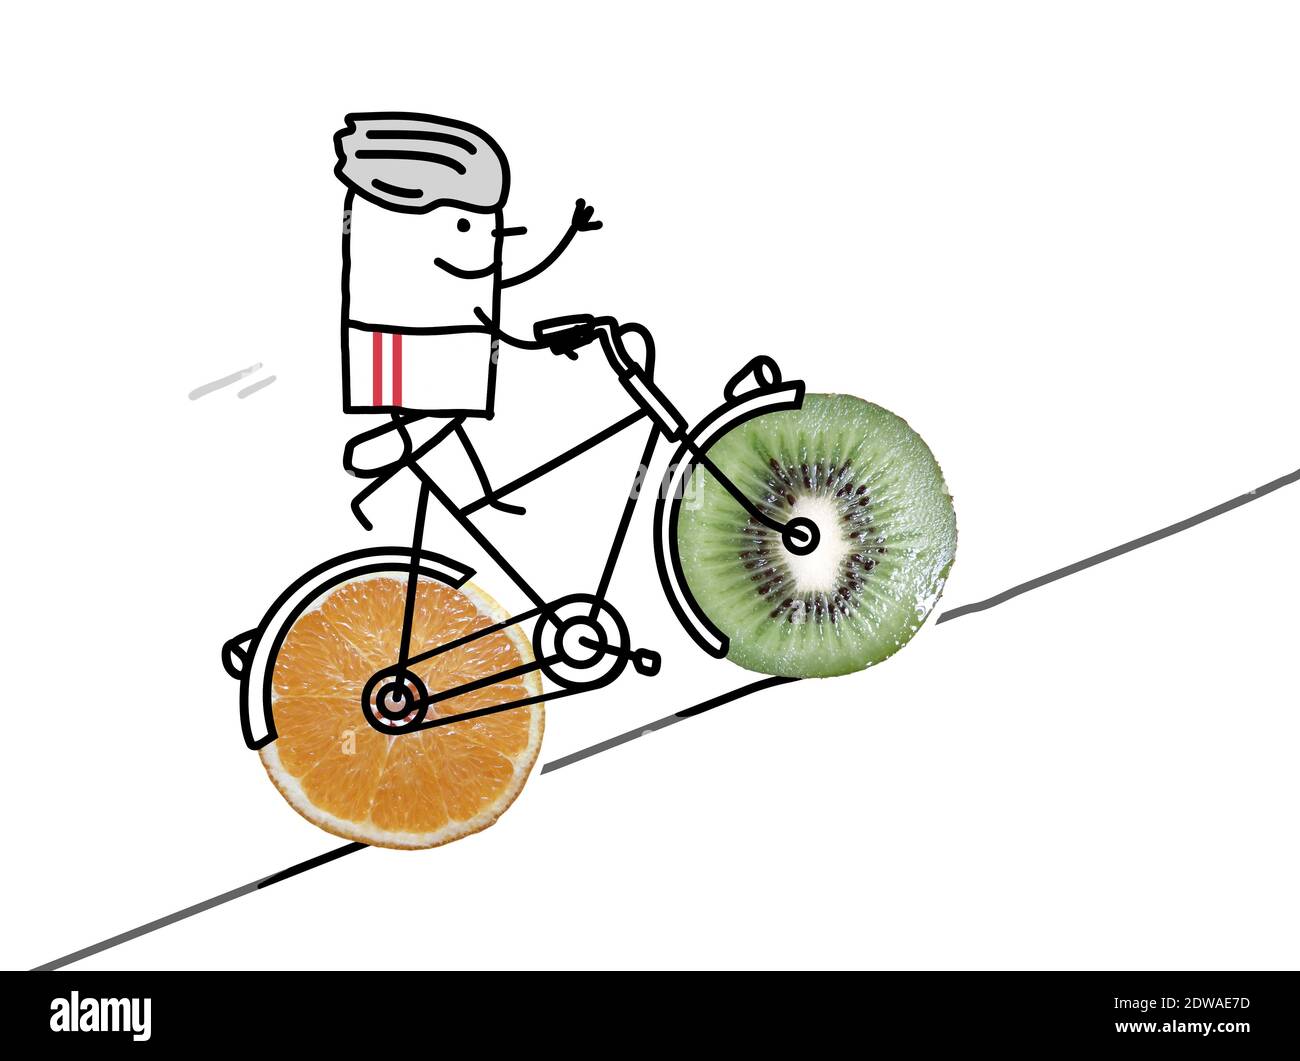 Disegnata a mano - Cartoon ciclista sportiva con grandi ruote fruttate - Collage Foto Stock